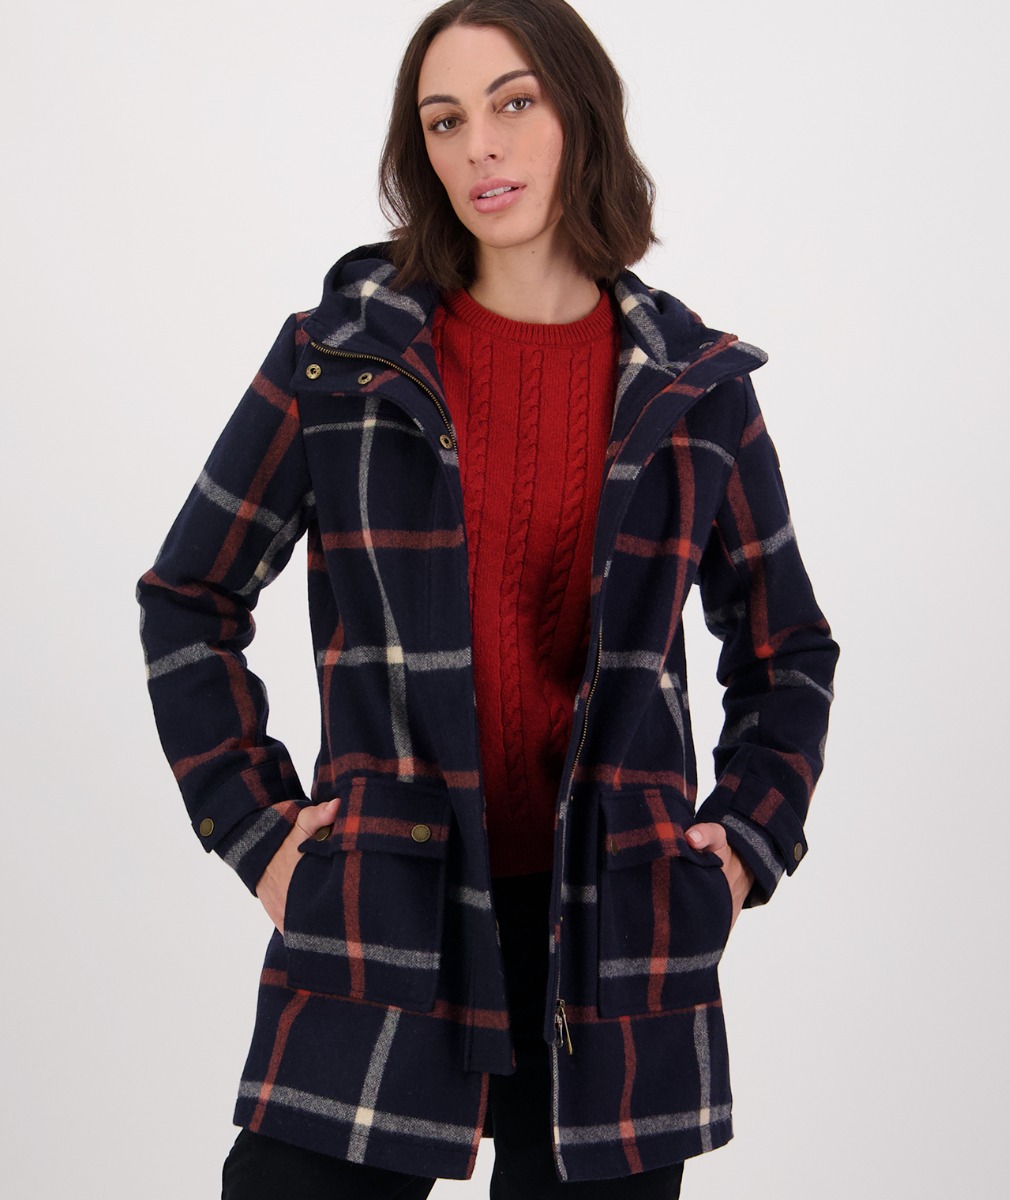 Women's Annmore Wool Overcoat